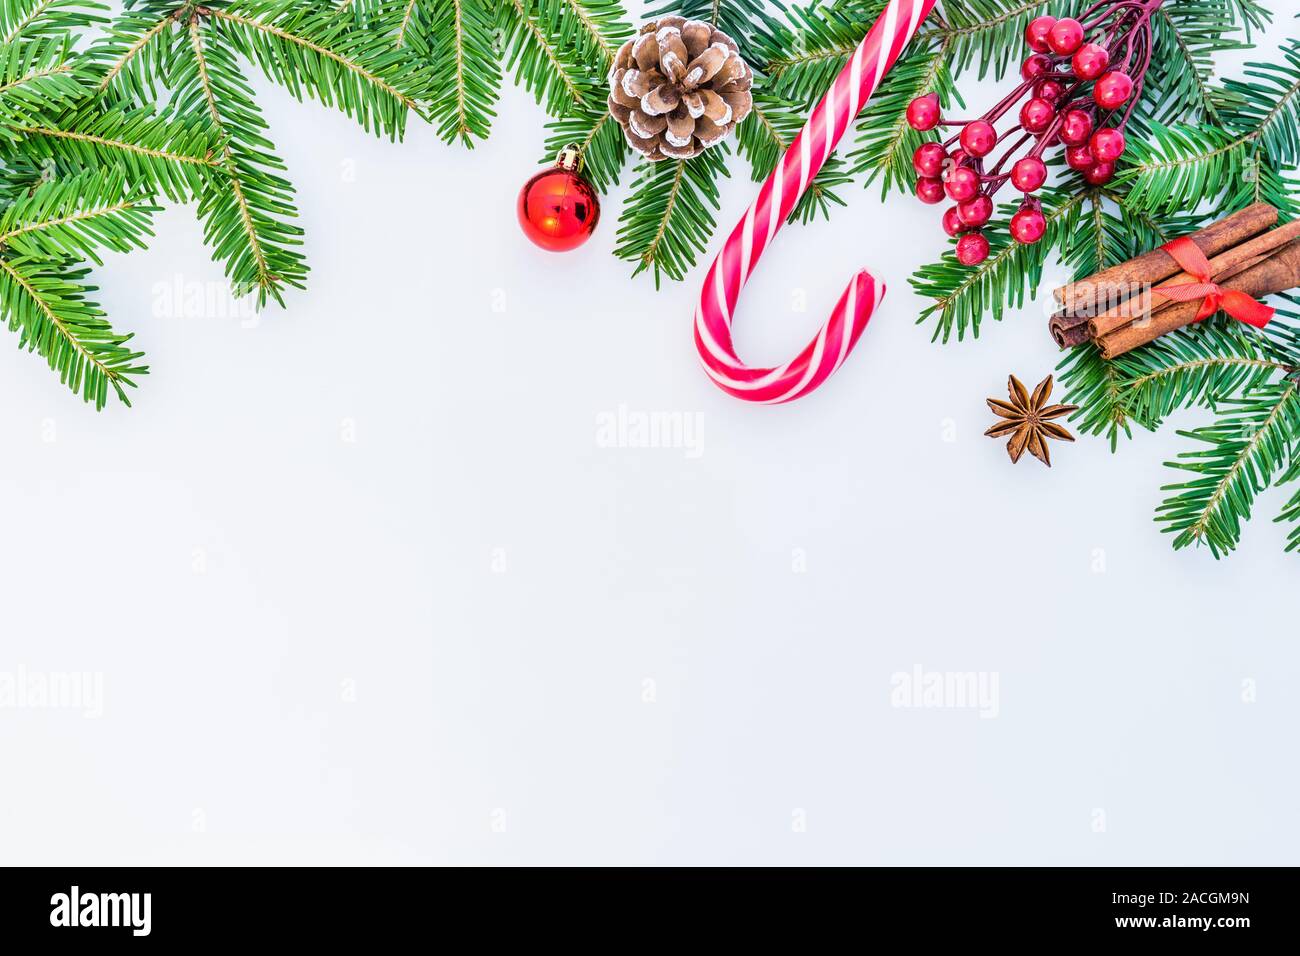 Weihnachten Hintergrund mit Dekorationen, tannenzweigen, Süßigkeiten, rote Beeren, Kegel, Zimt, Anis und Platz für Text. Stockfoto